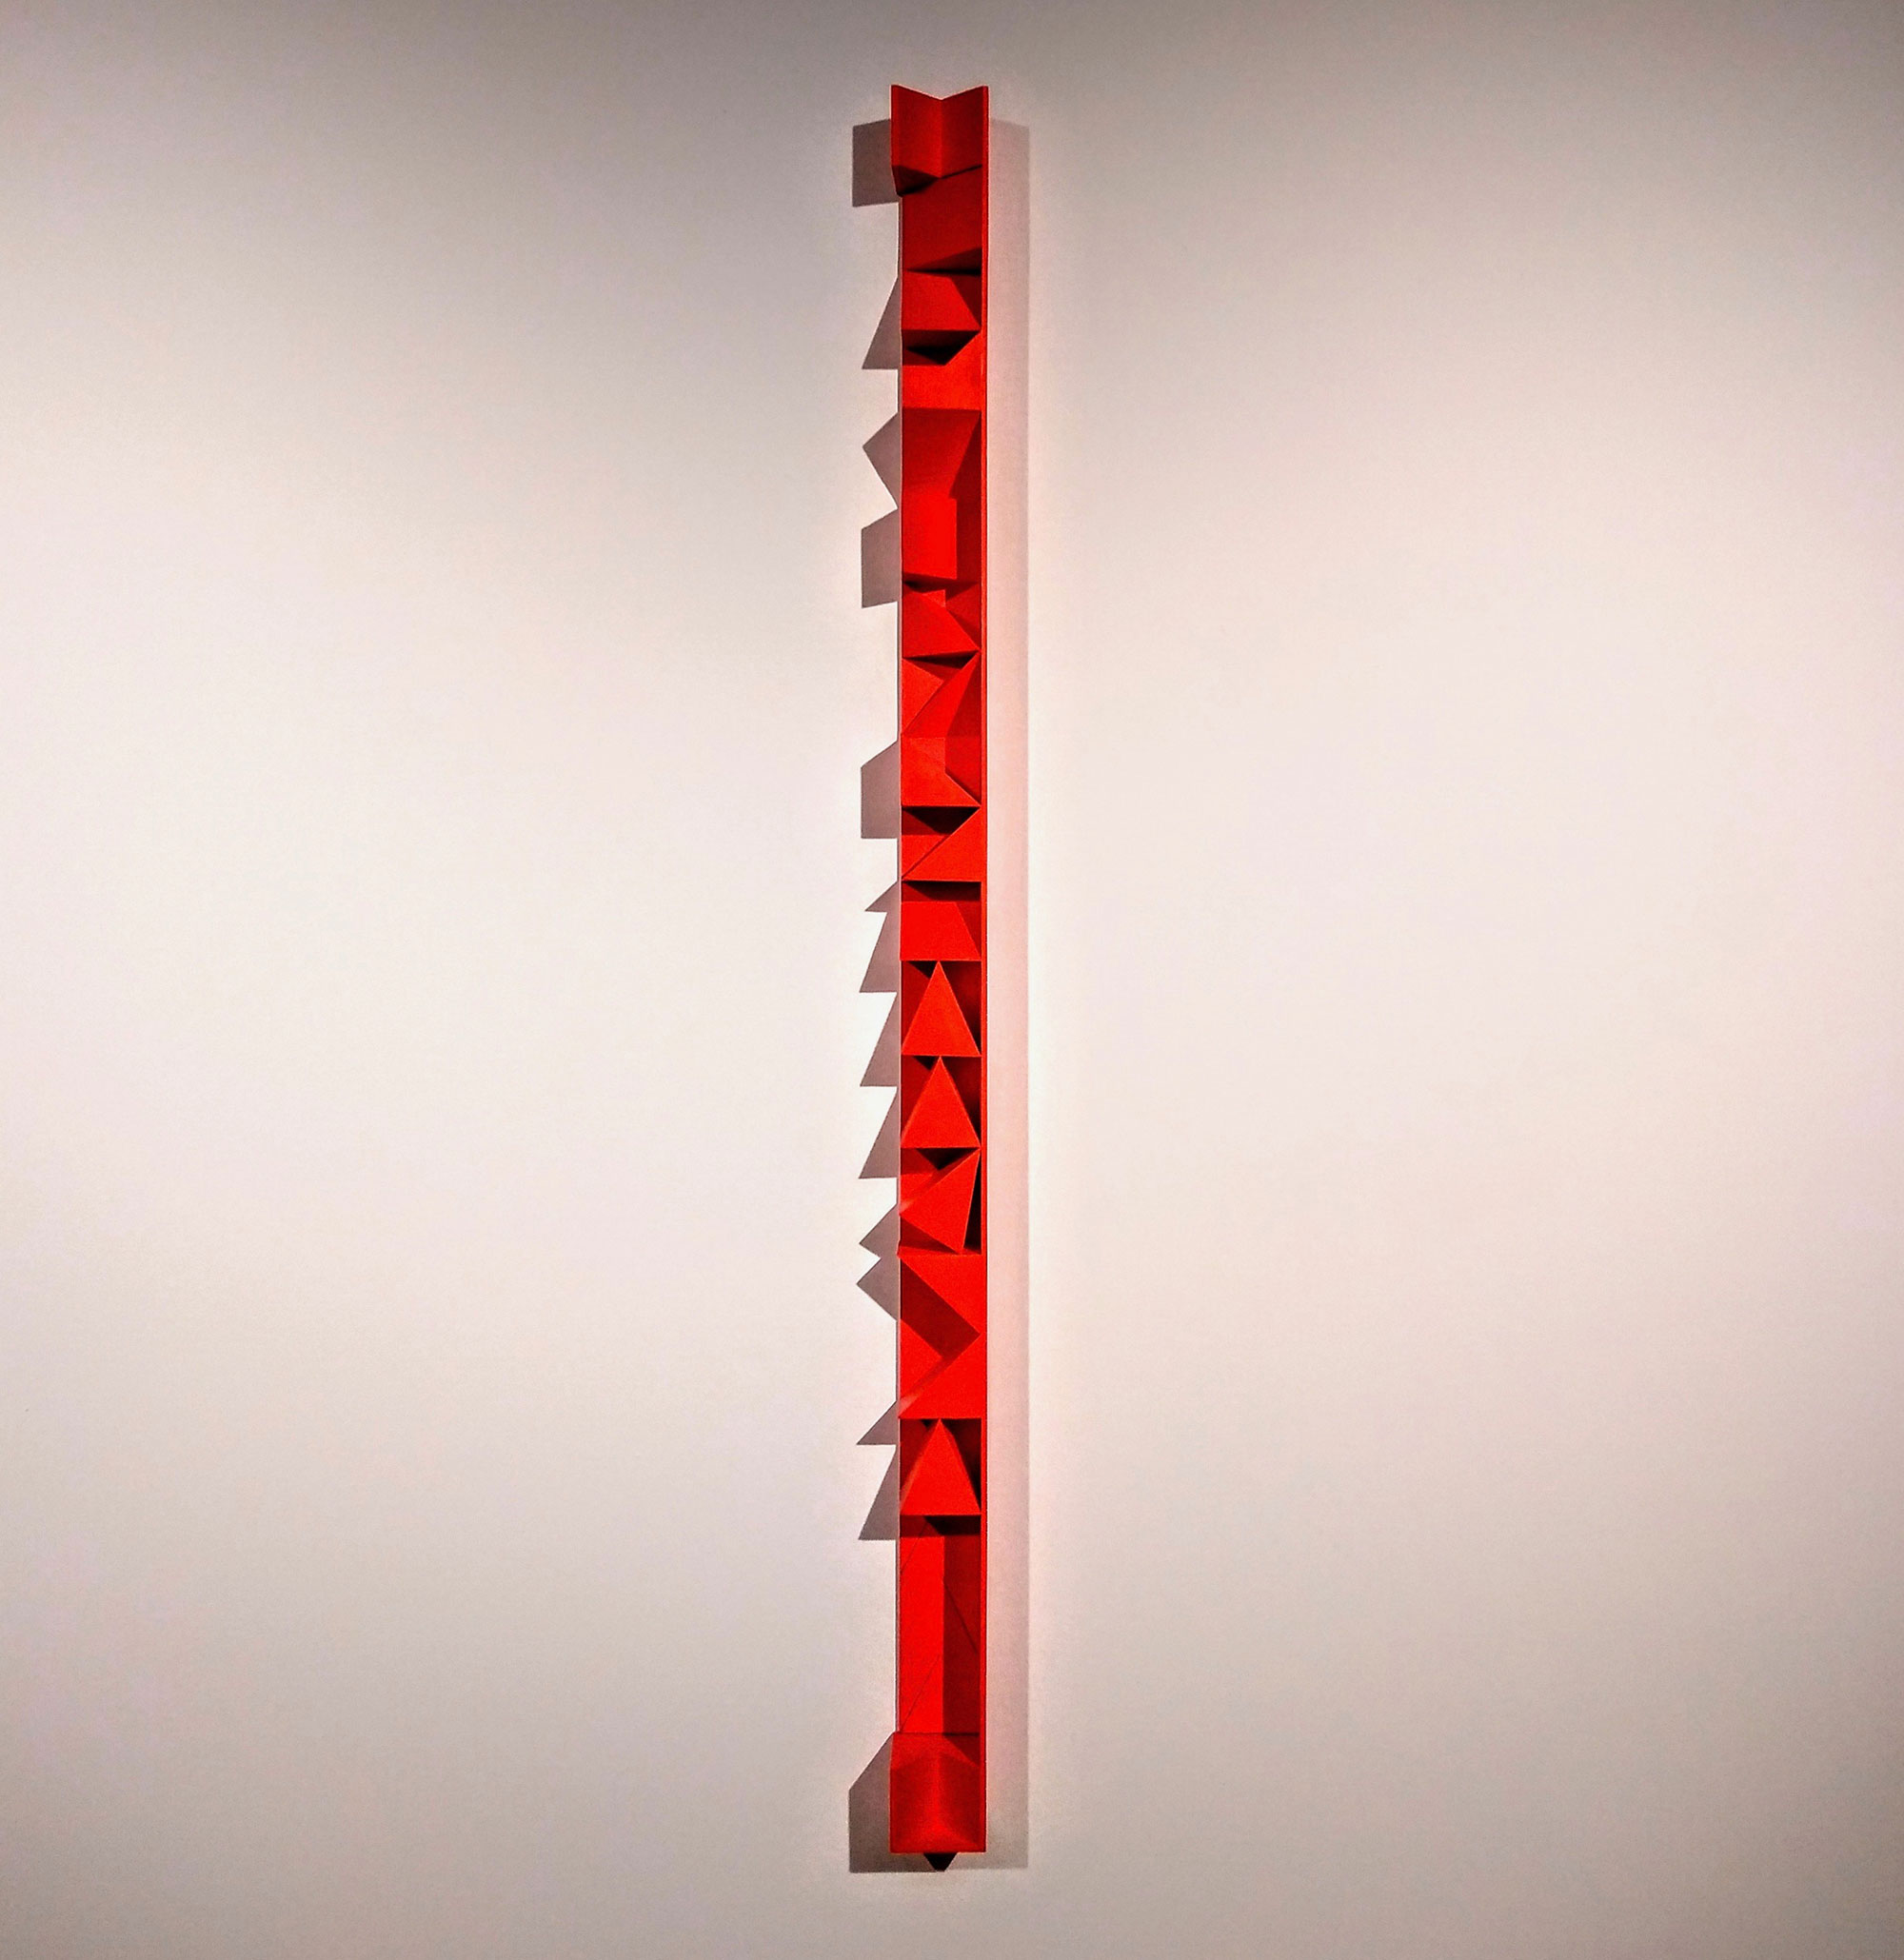 Kenneth Dingwall, Pending, 2019, acrylic on basswood, 152cm x 8.5cm x 7.5cm